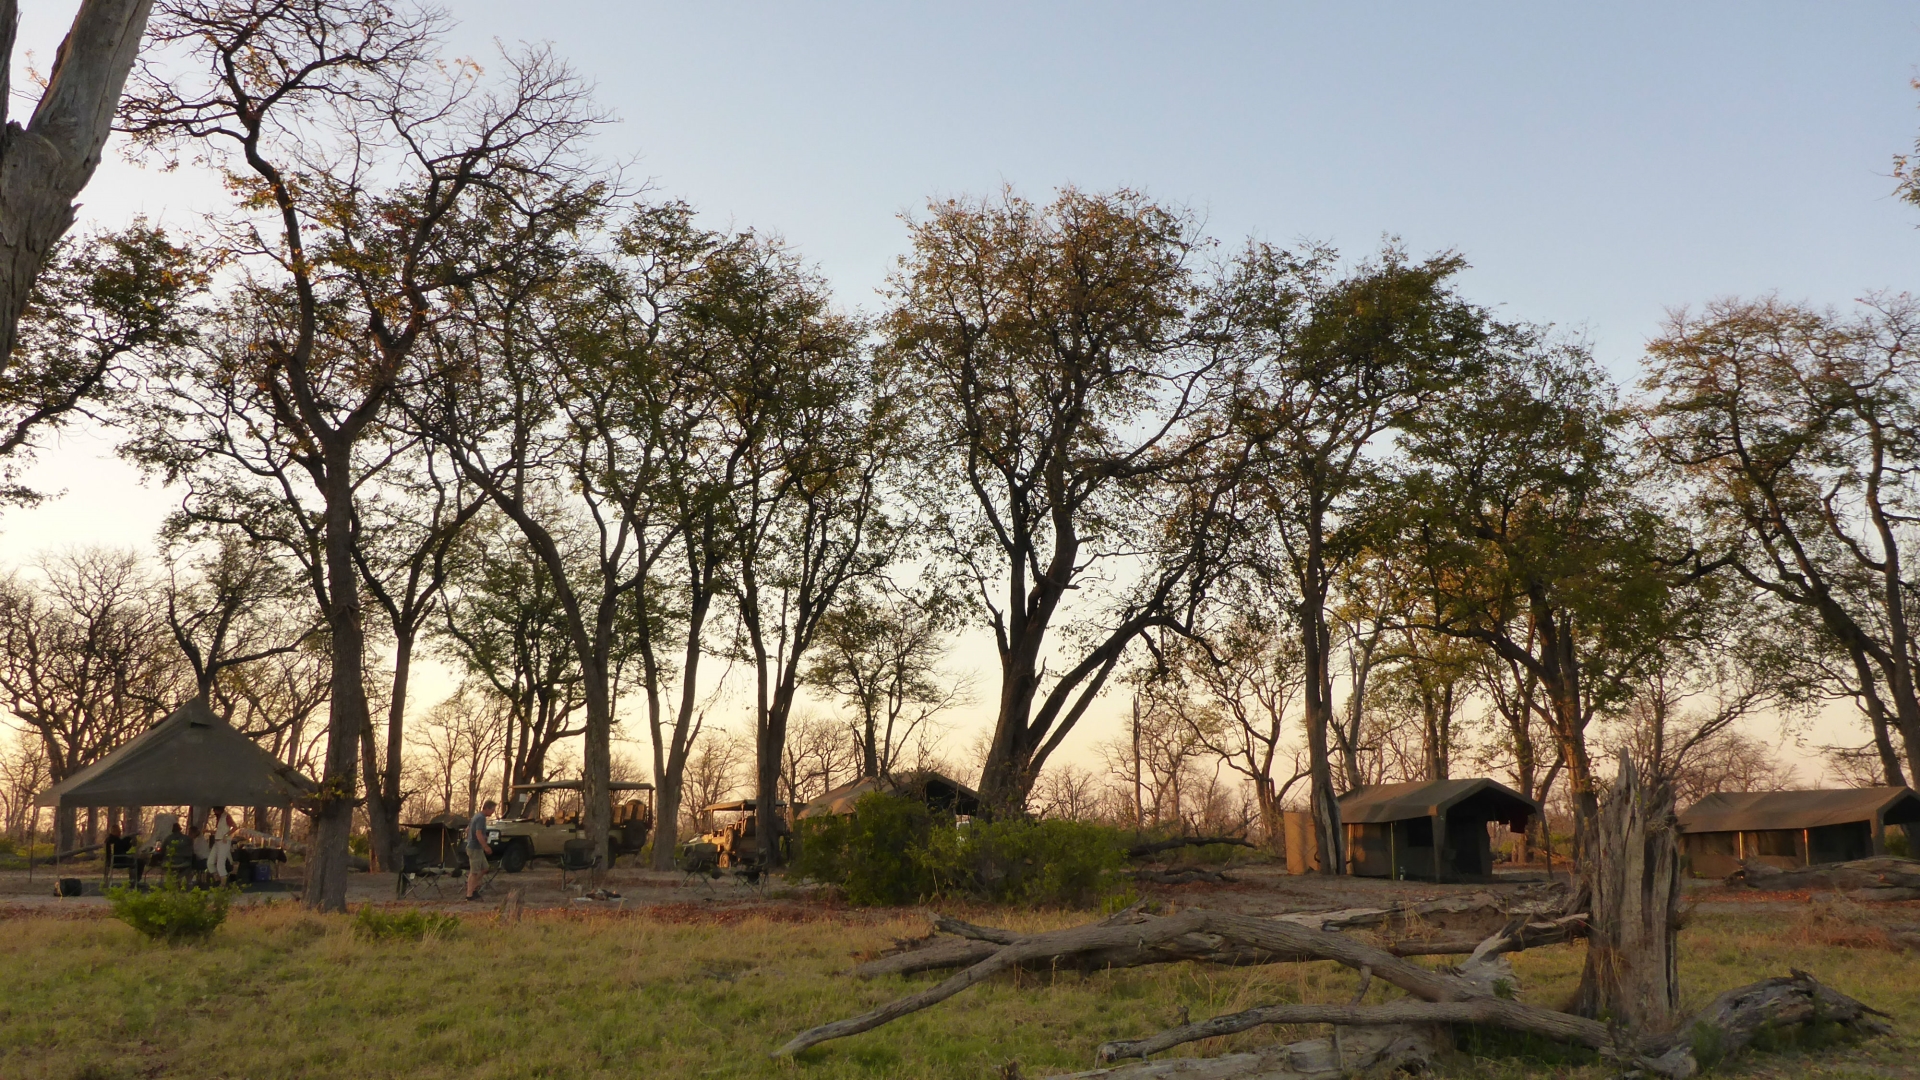 Camp set-up - Wild Botswana 